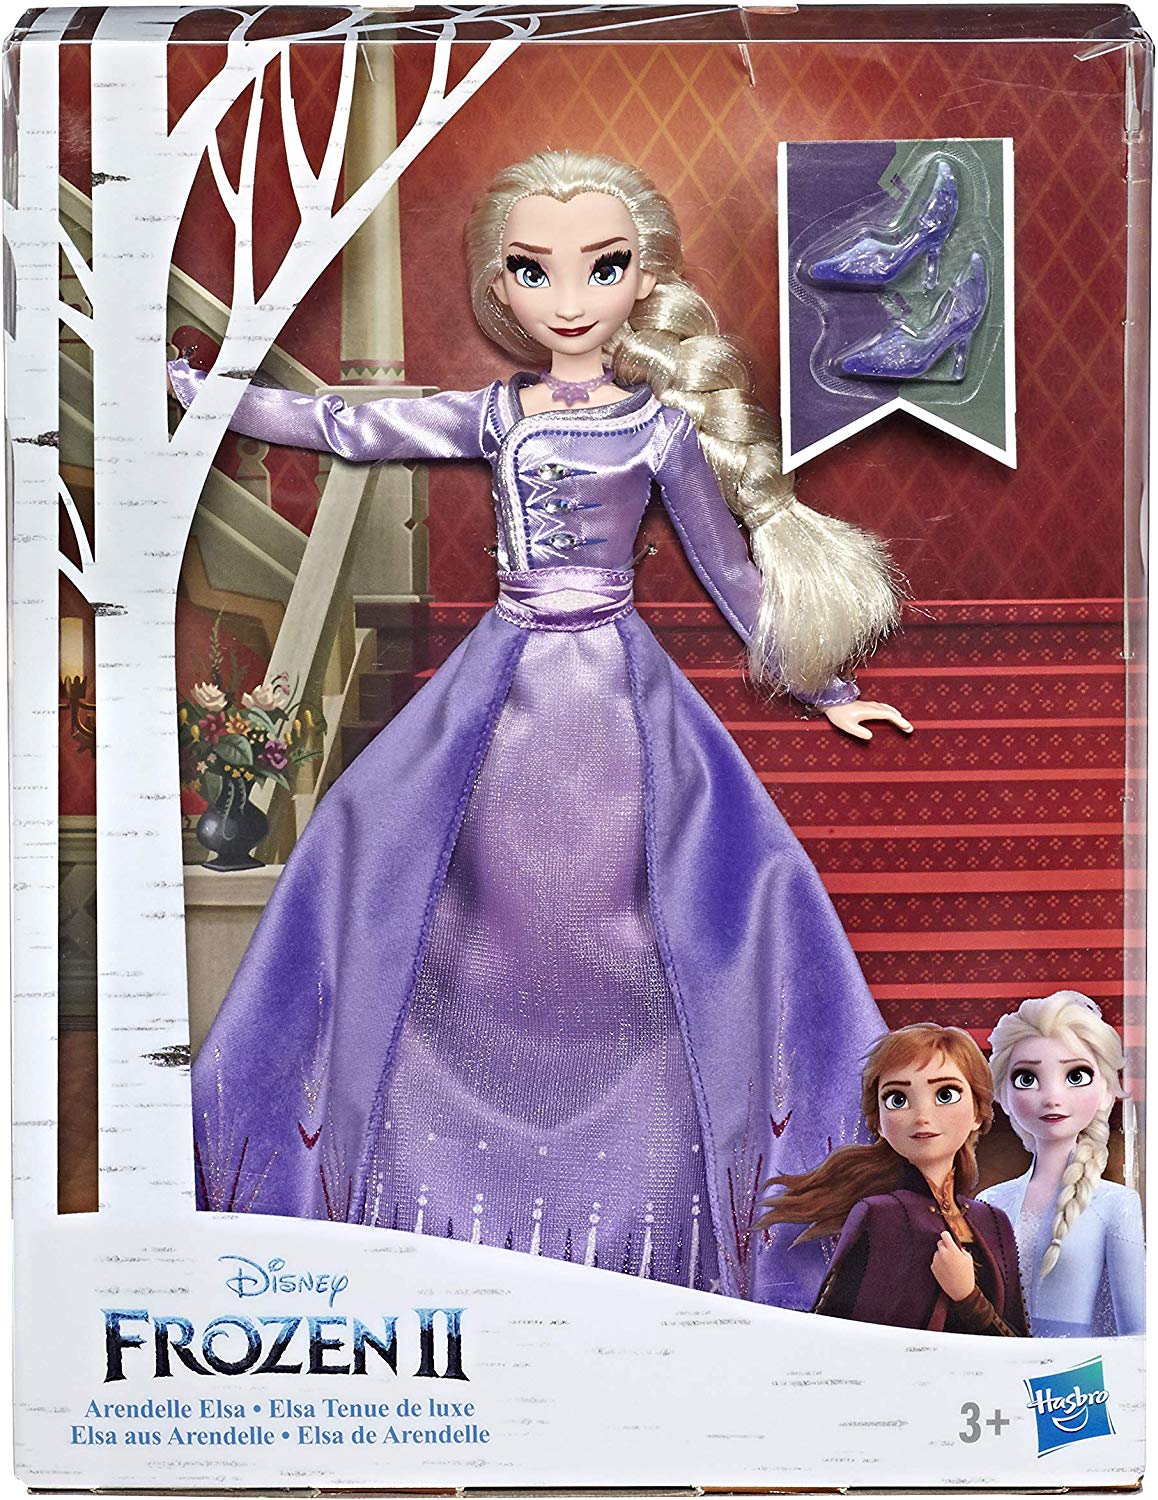 Кукла Делюкс Эльза из серии Disney Princess Холодное сердце 2  